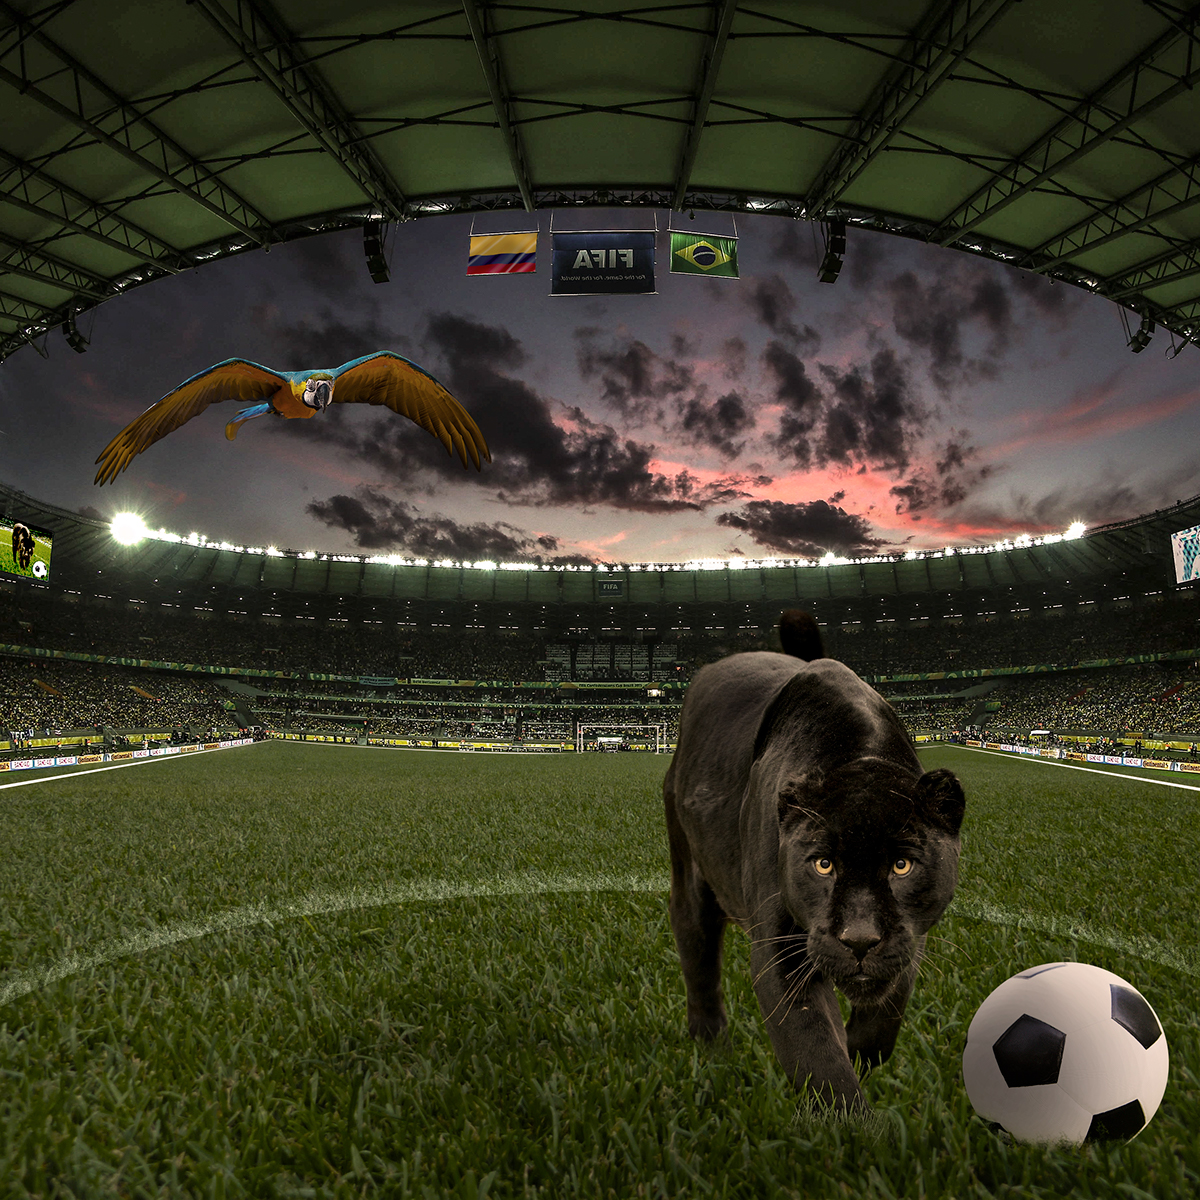 Brasil Comlombia photomanipulation photo manipulation pantera panther soccer futebol Brazil photoshop